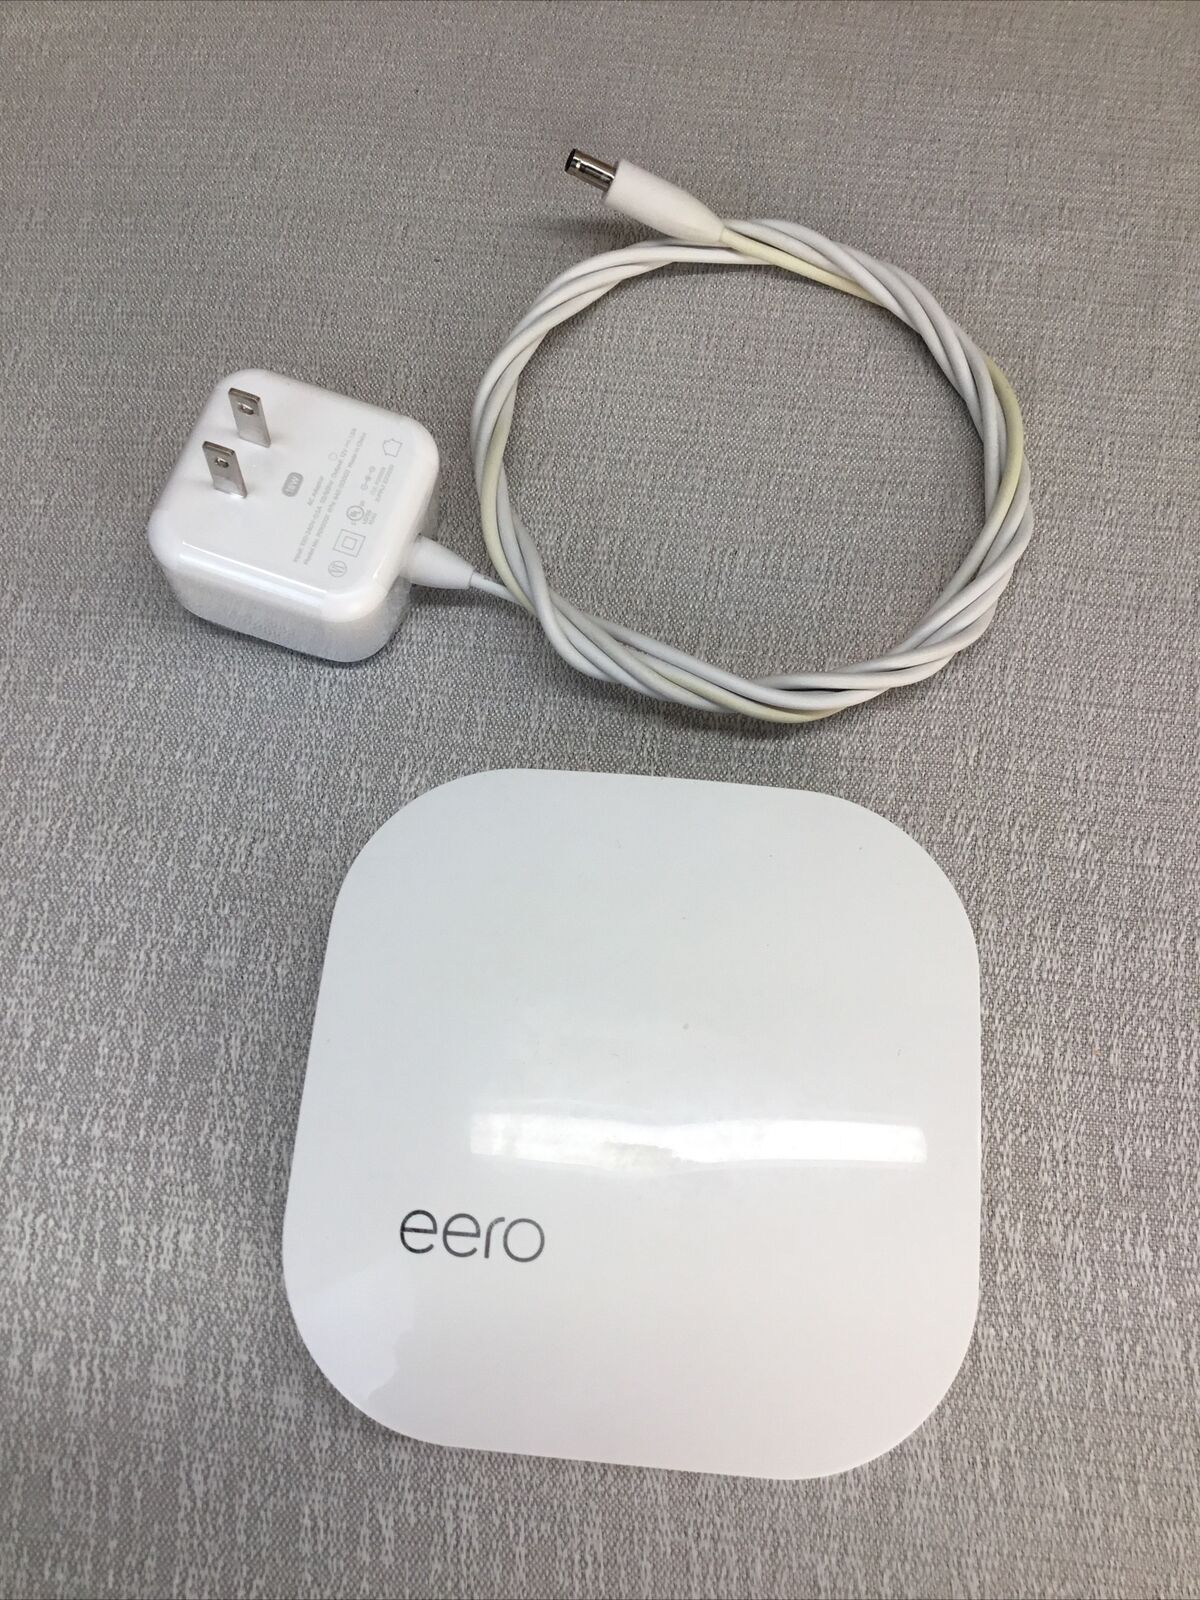 eero 1st-Gen Network Switch A010001